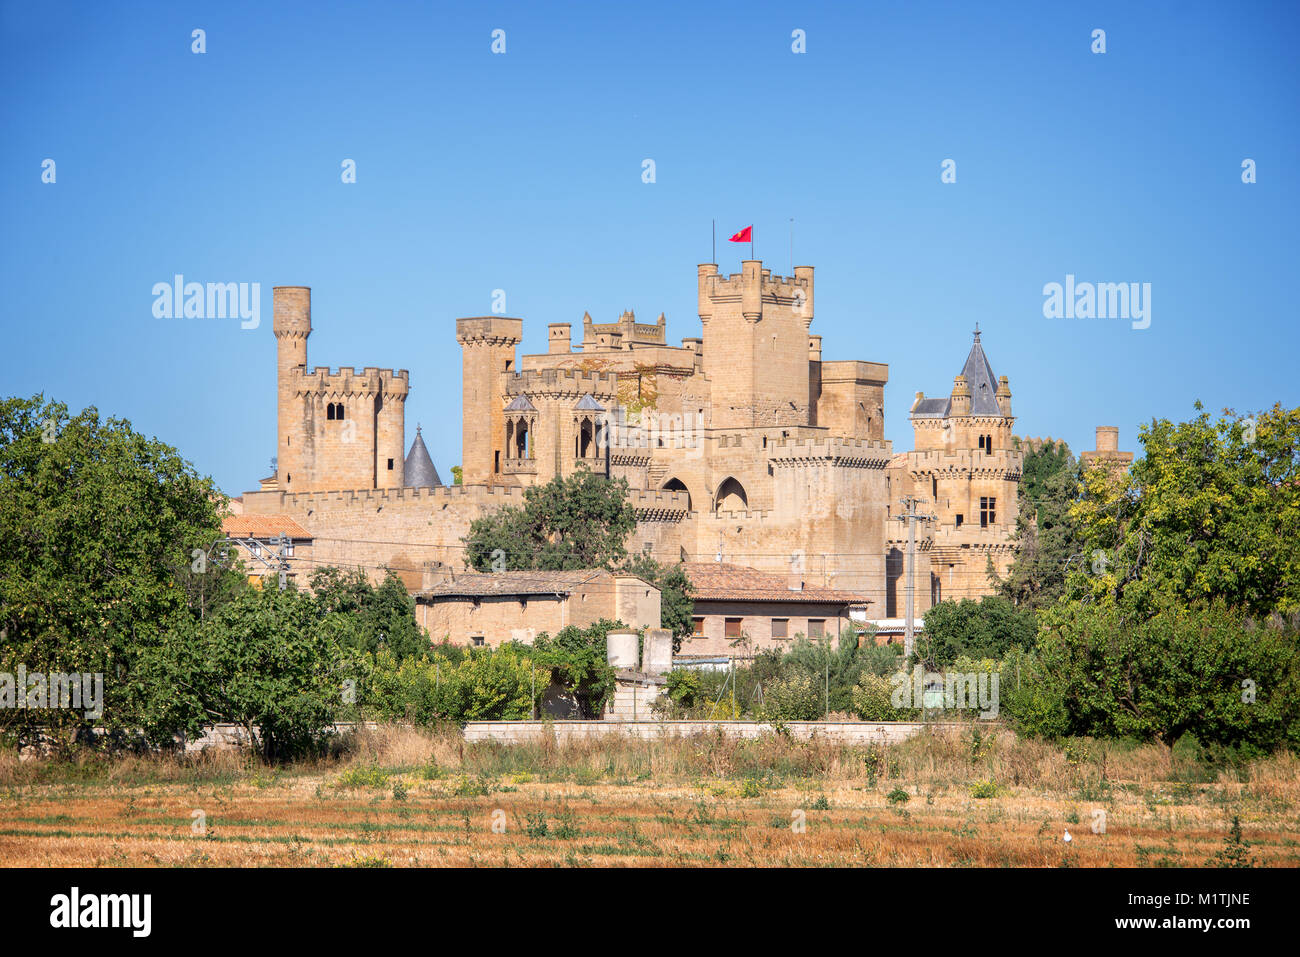 Olite medieval castle in Navarra, Spain Stock Photo